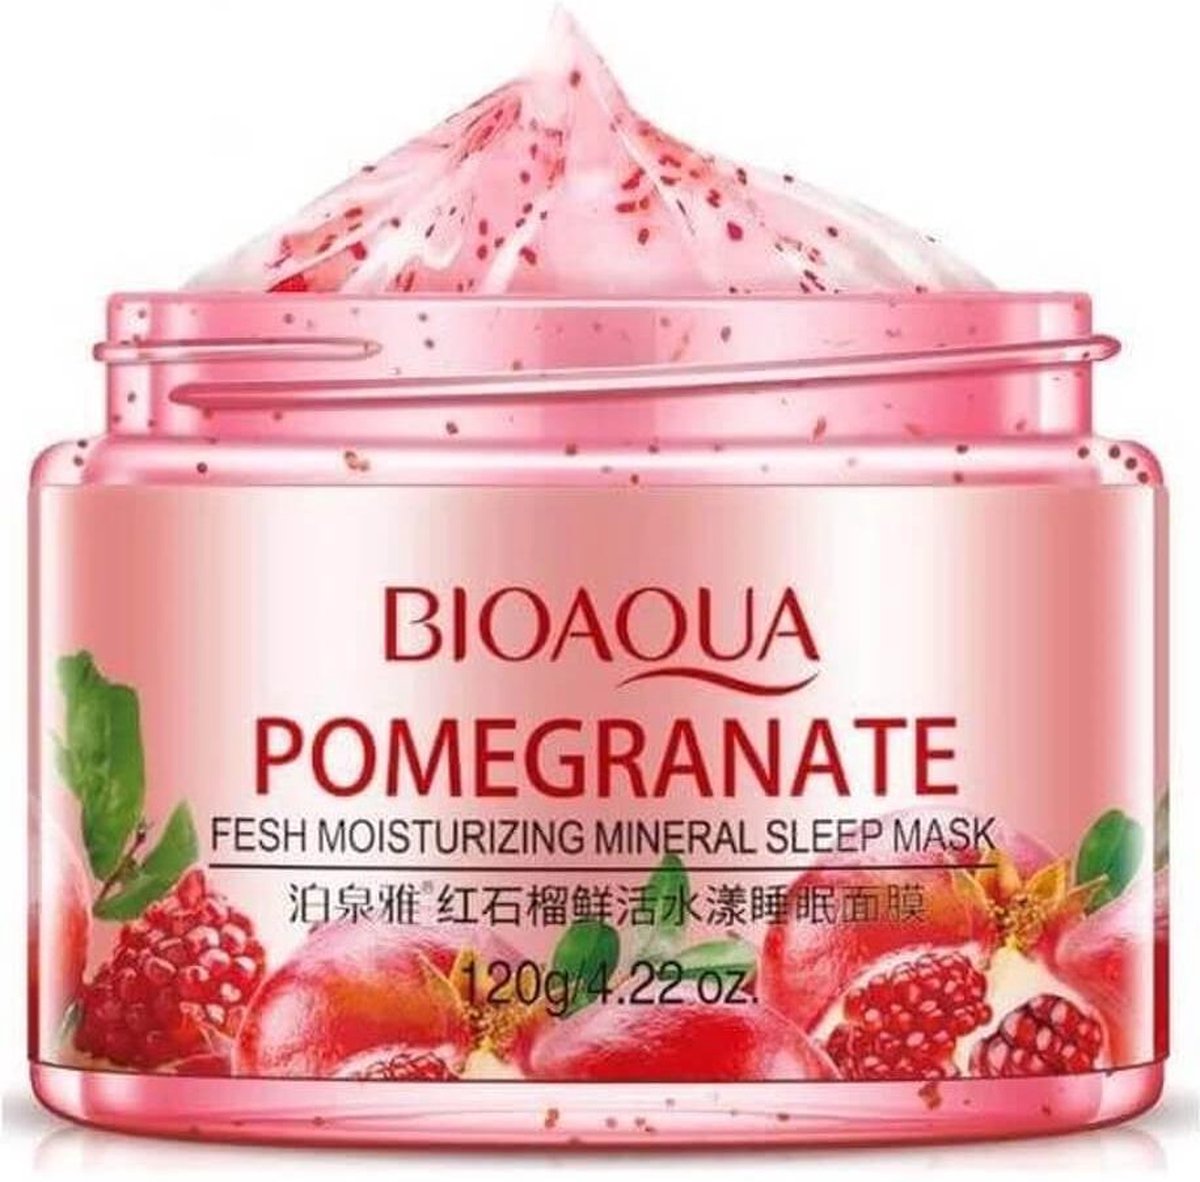 Bioaqua Granaatappel - 120g - Nachtcrème - Gezichtsmasker - Hydraterend - Met gratis gezichtsmasker